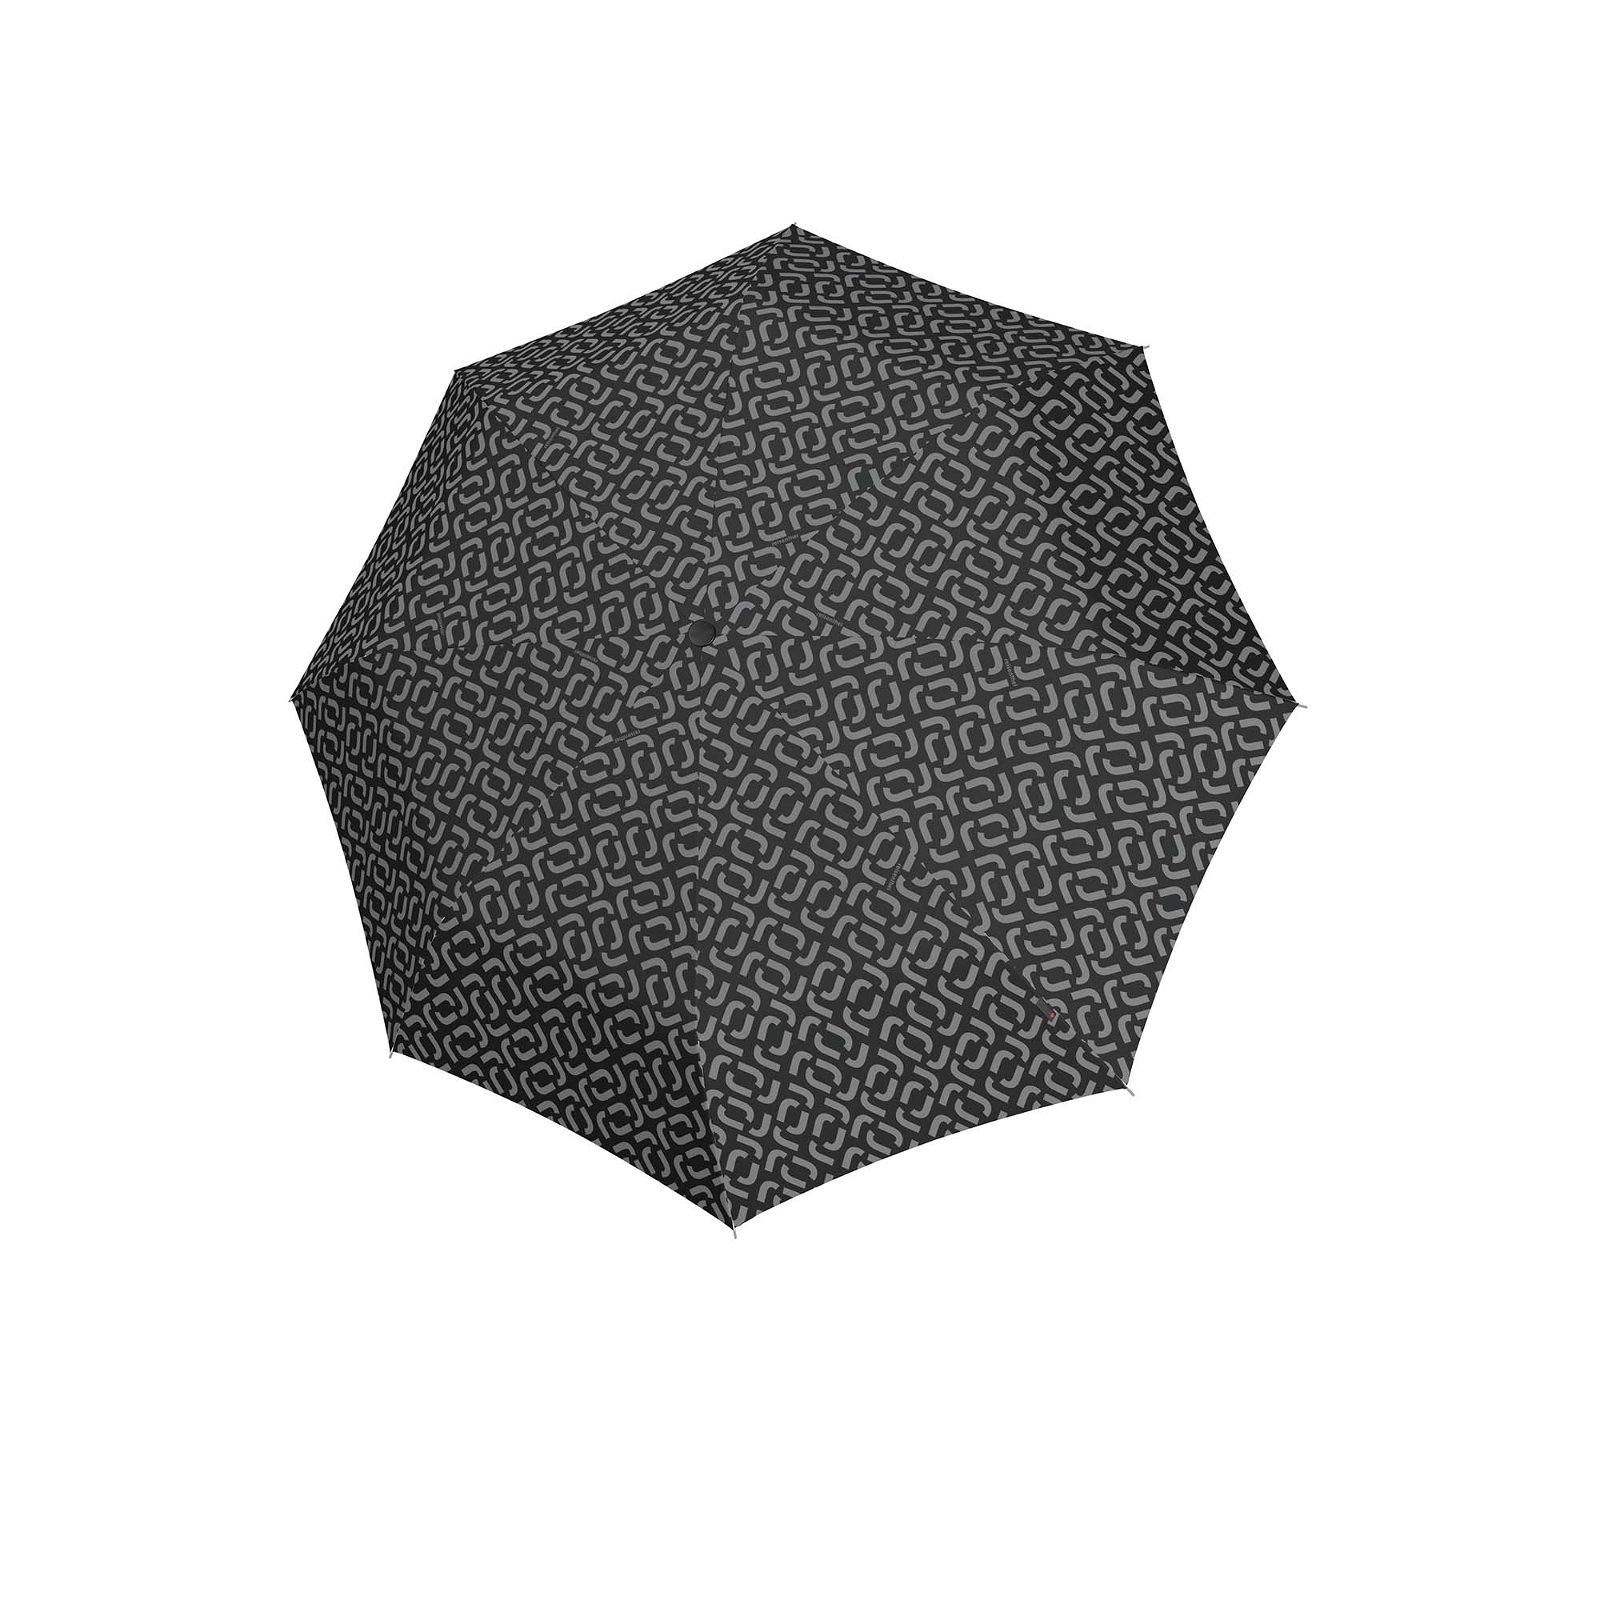 Regenschirm pocket classic